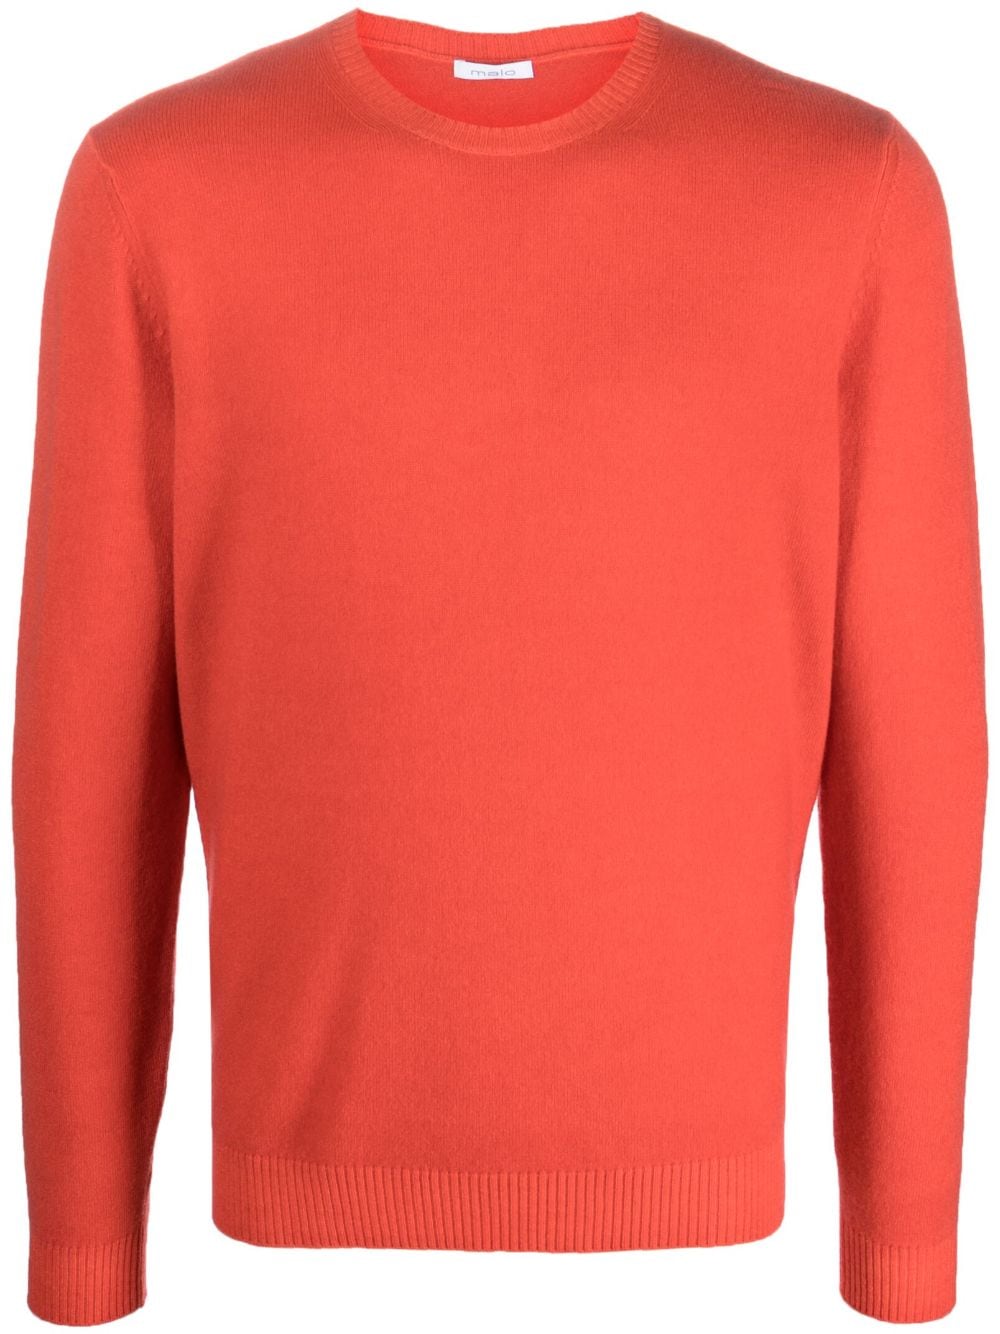 maglione girocollo arancione